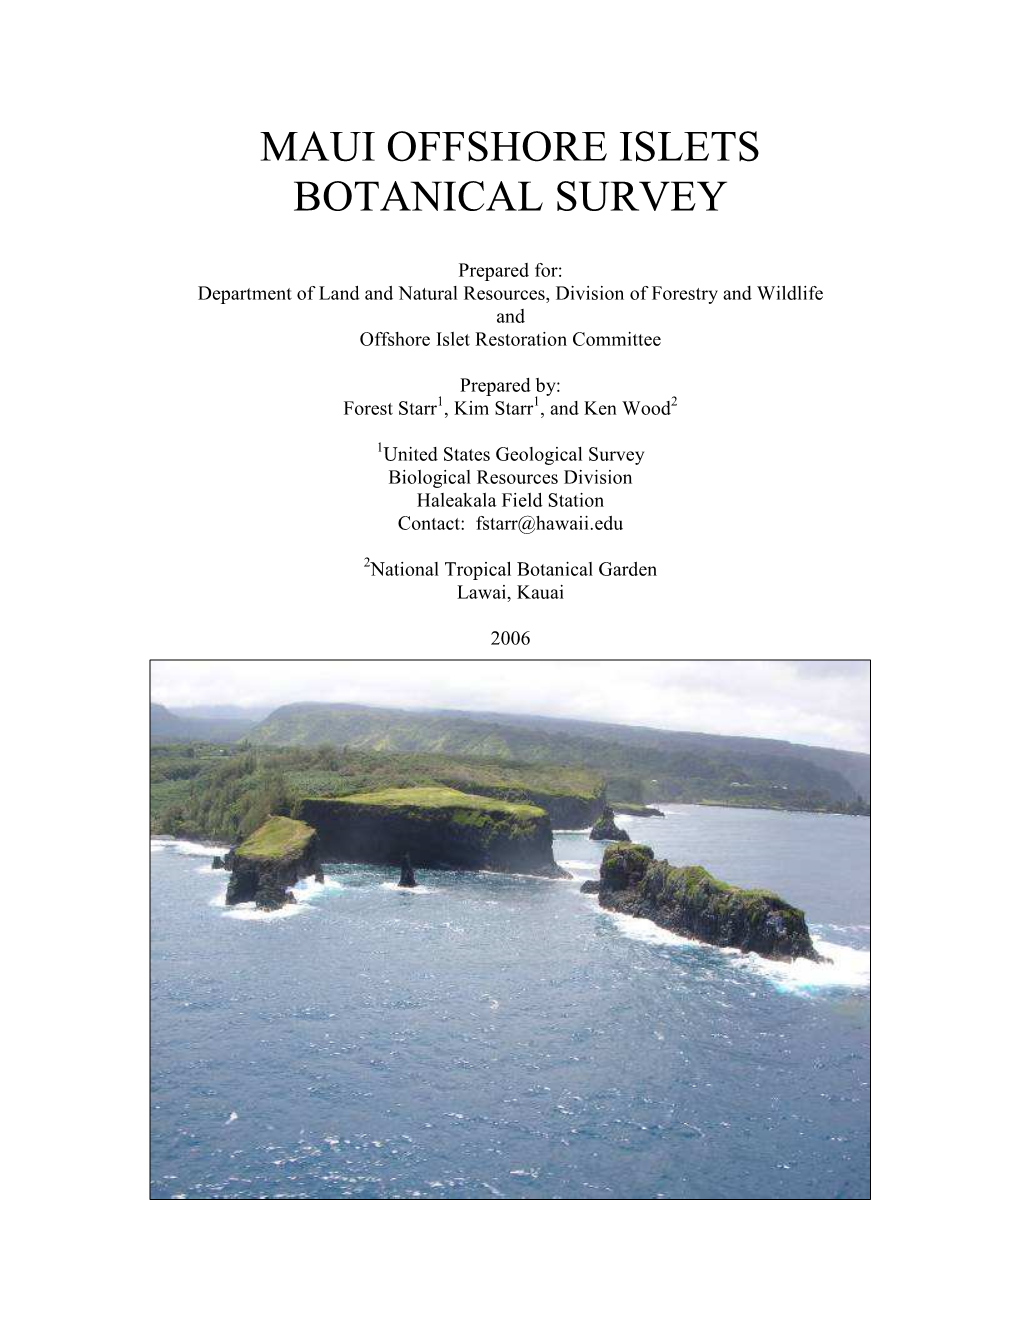 Maui Offshore Islets Botanical Survey